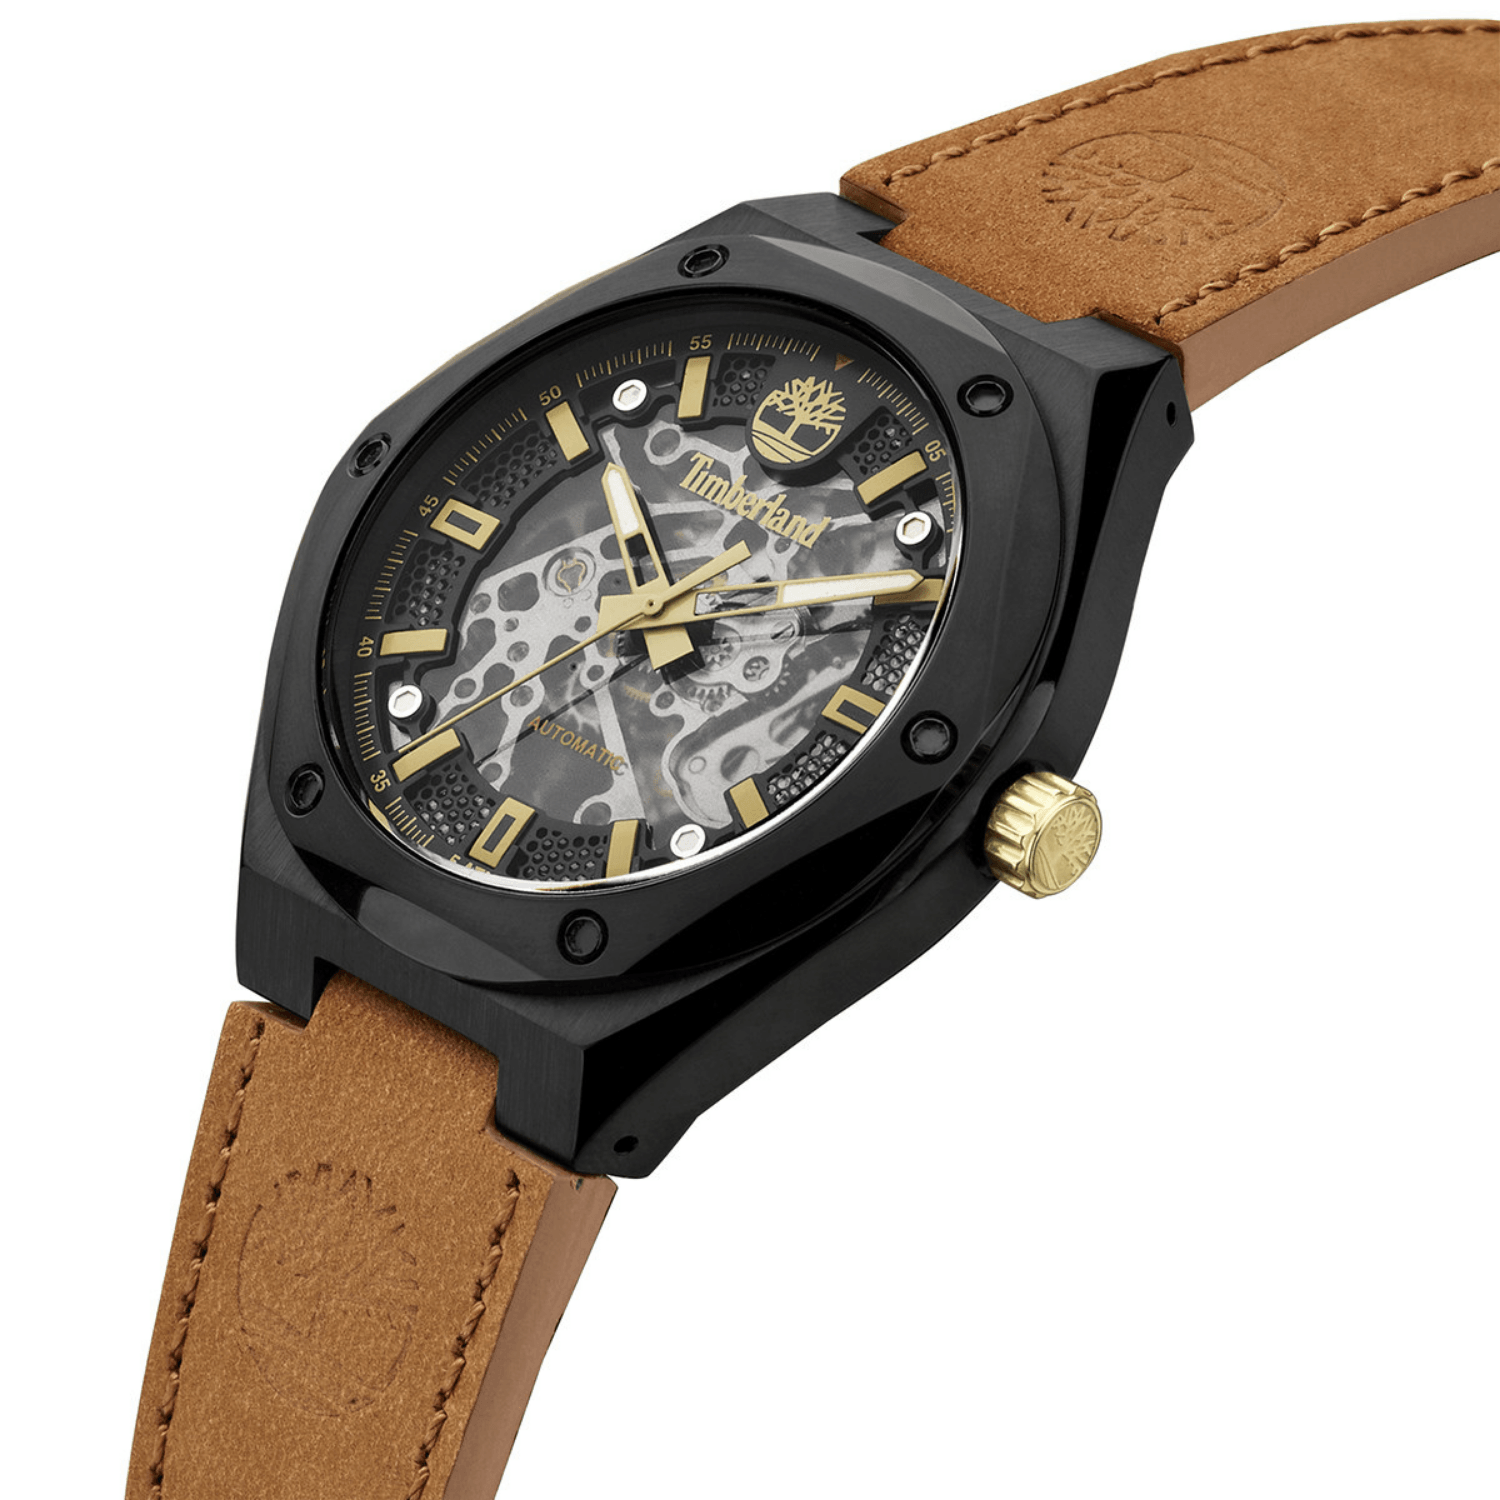 Αυτόματο ρολόι Timberland Alburgh TDWGE2101201 με ταμπά δερμάτινο λουράκι και μαύρο καντράν διαμέτρου 44mm.